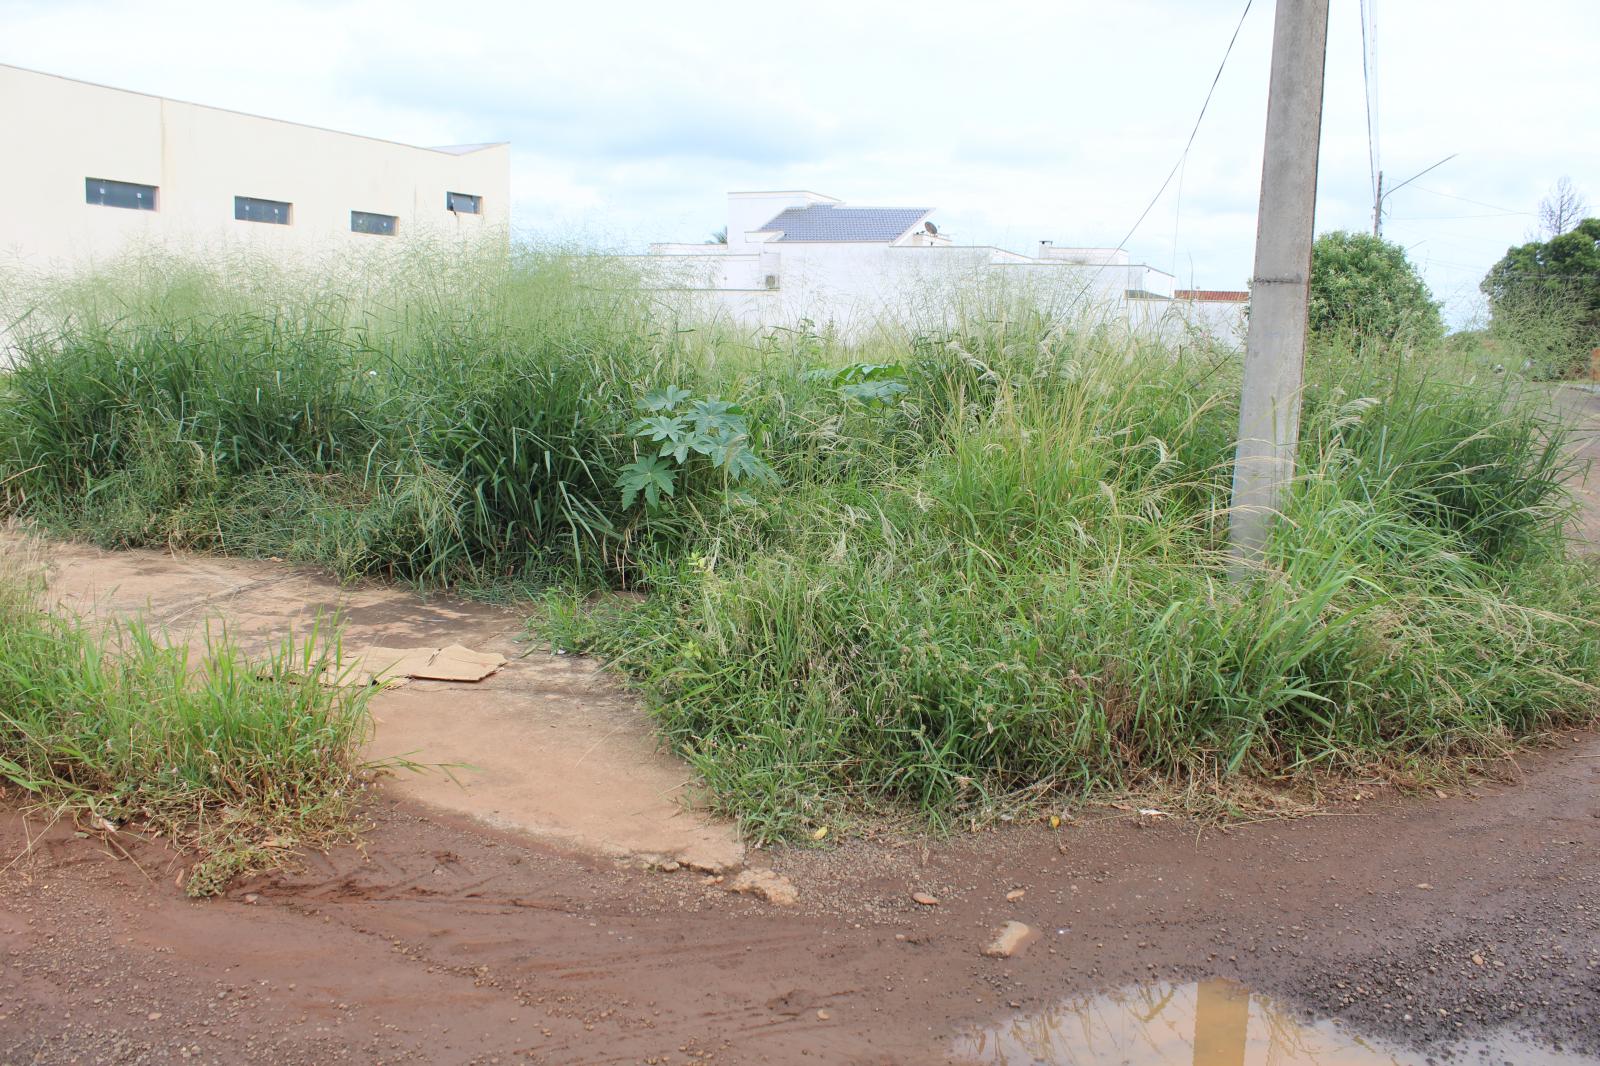 Prefeitura vai notificar e multar dono de terreno baldio sujo. Fiscalização começa hoje